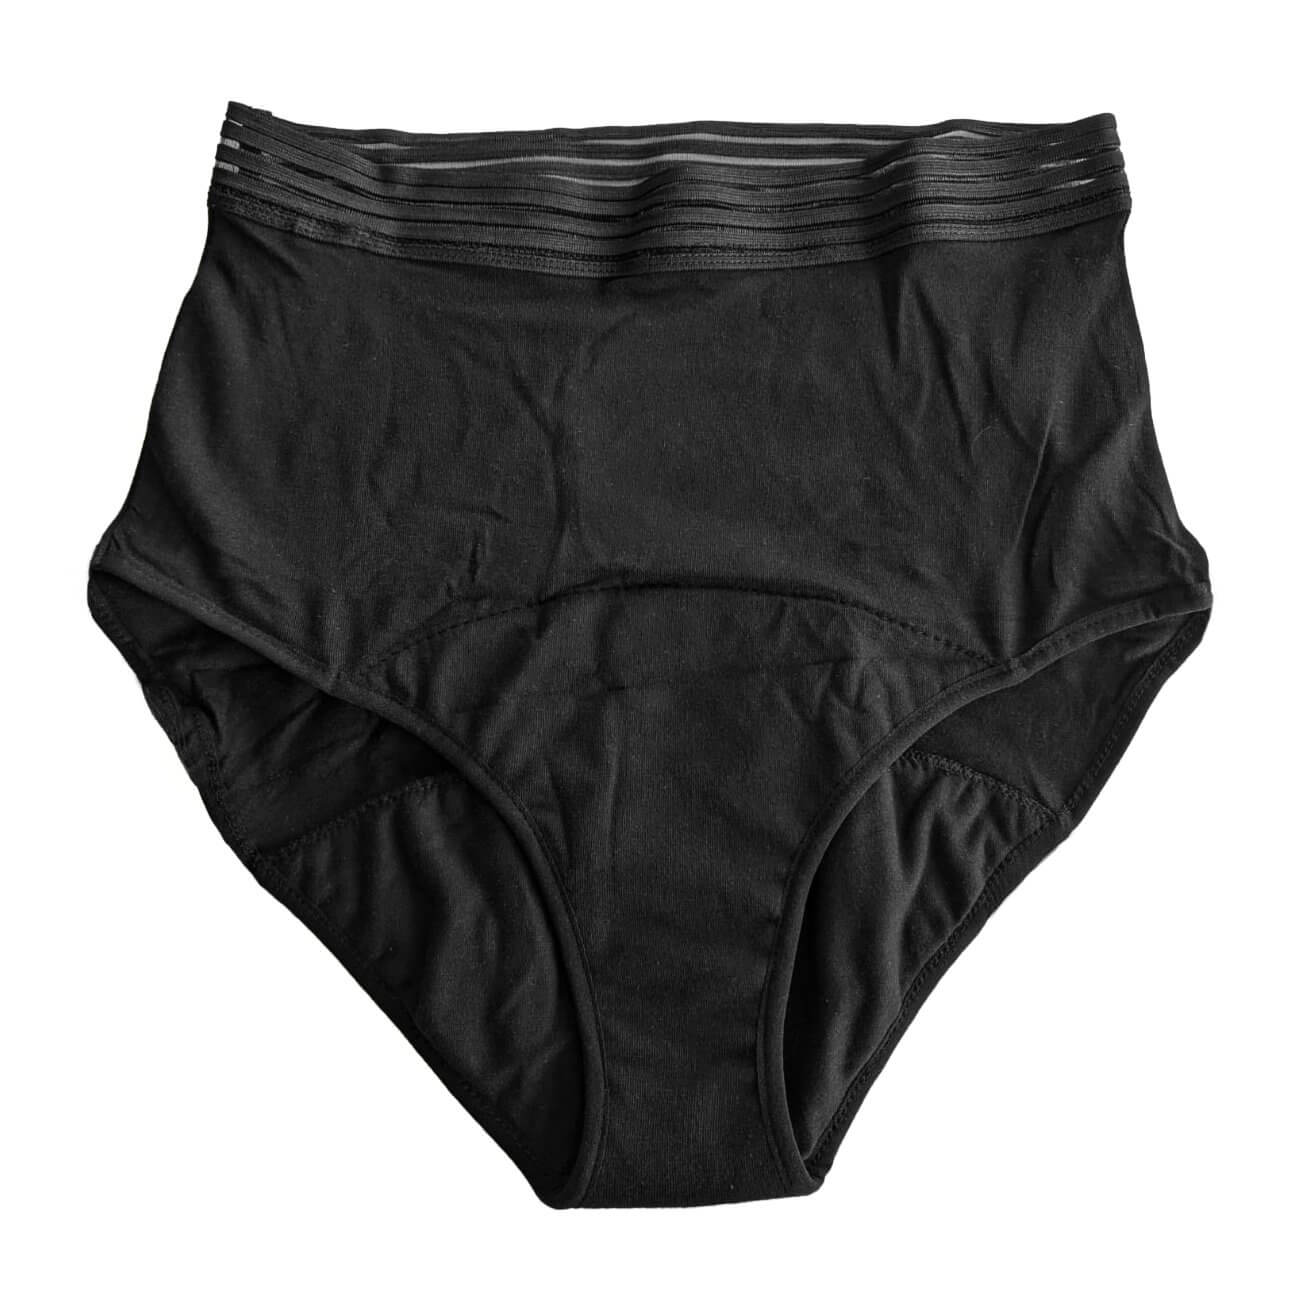 Period Underwear - Super High Waist - Heavy Flow - Plastic Free Amsterdam